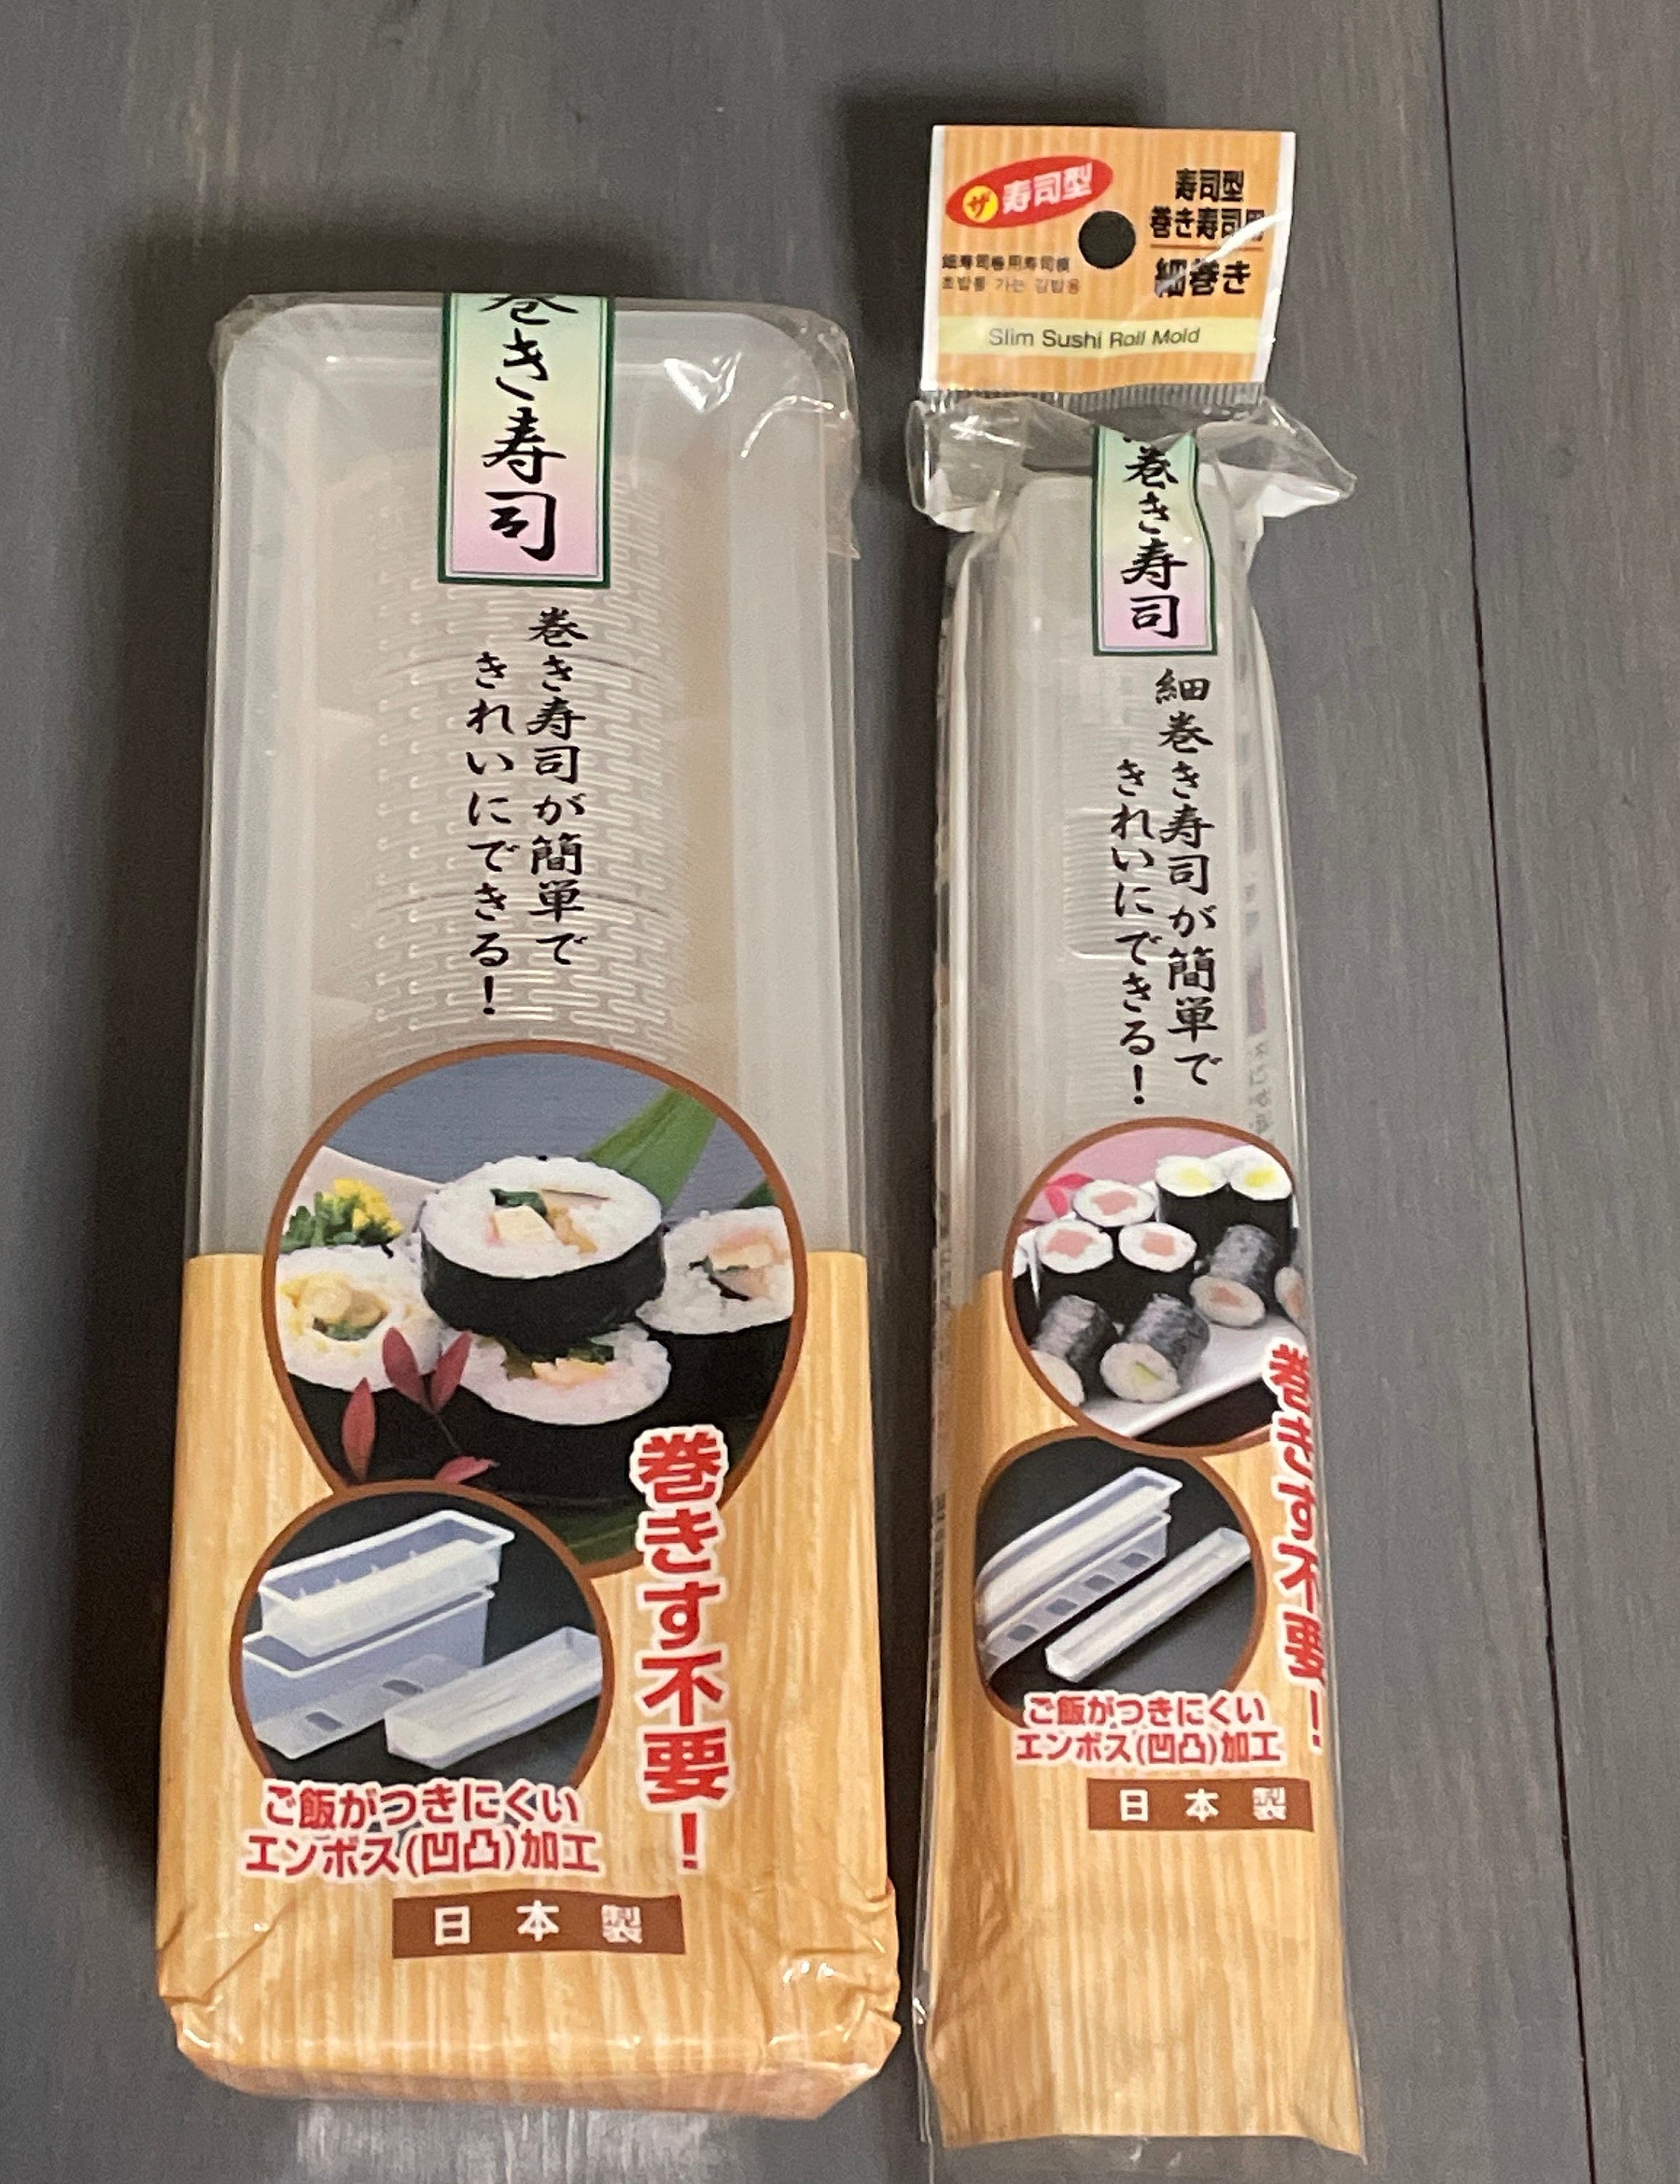 Nigiri Mold Pack - Japanese Nigiri Mold - My Japanese Home